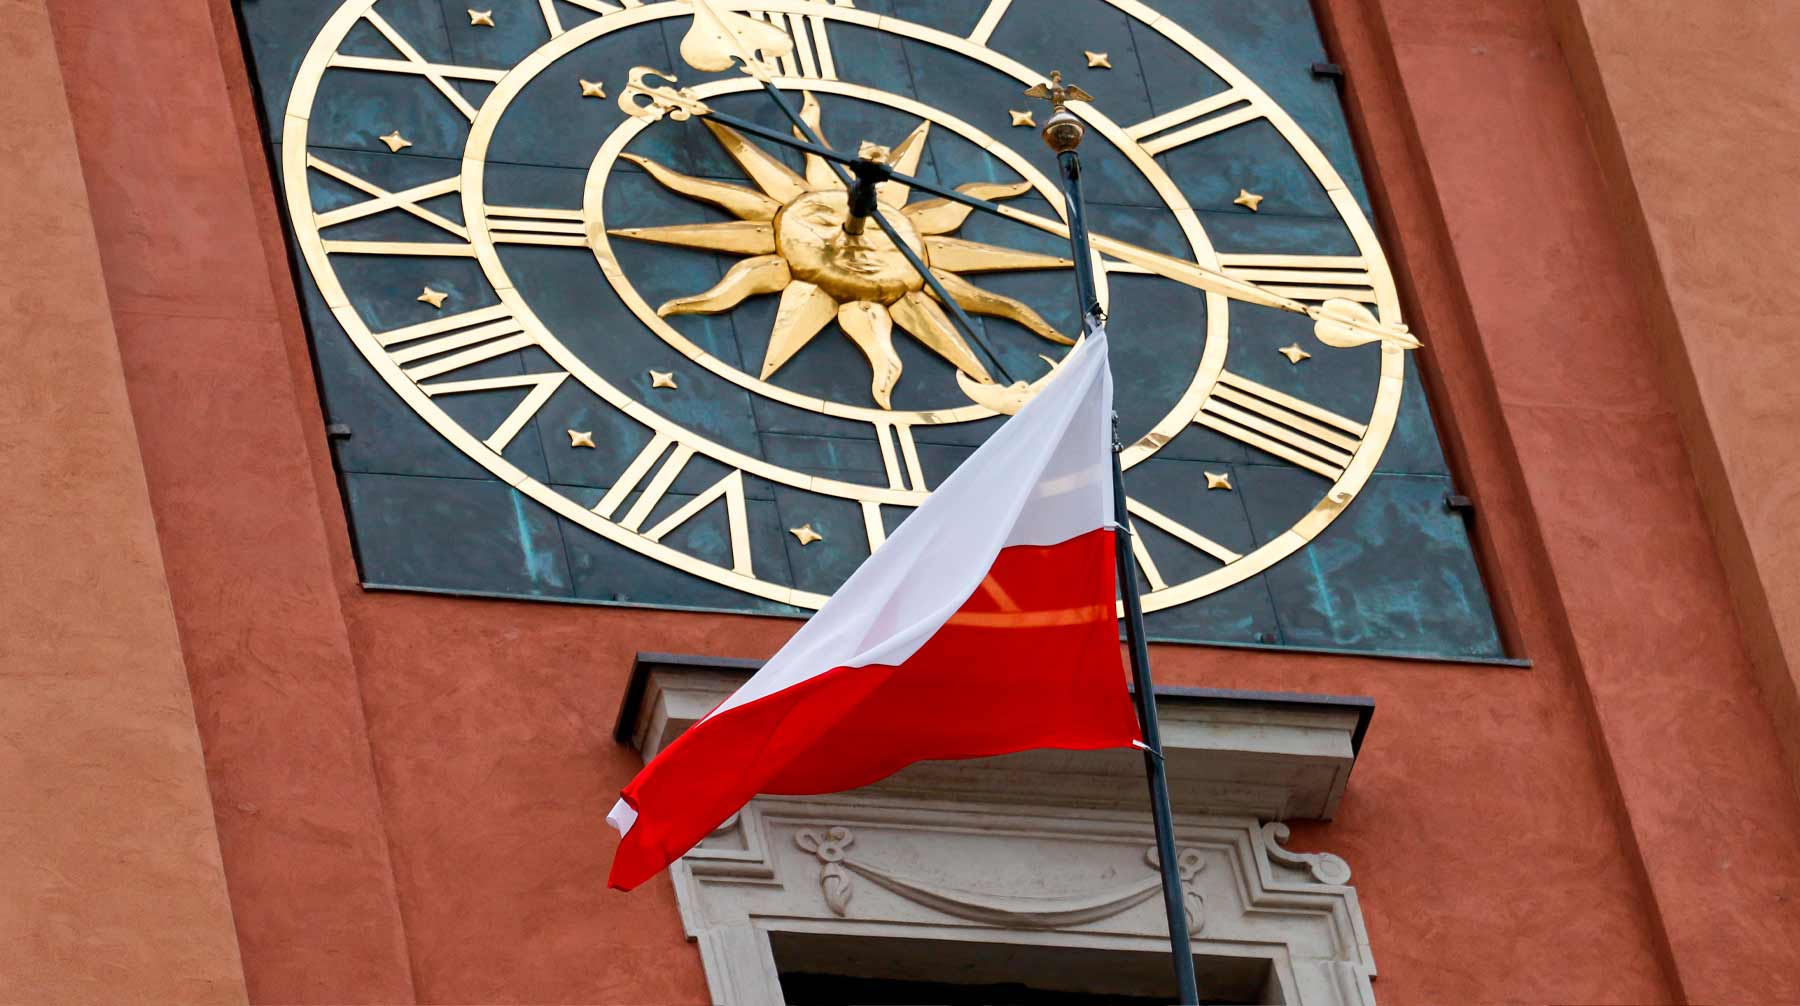 Эта тема для Варшавы не имеет срока давности, считает замглавы польского внешнеполитического ведомства Павел Яблонский Фото: © Global Look Press / Lidia Mukhamadeeva